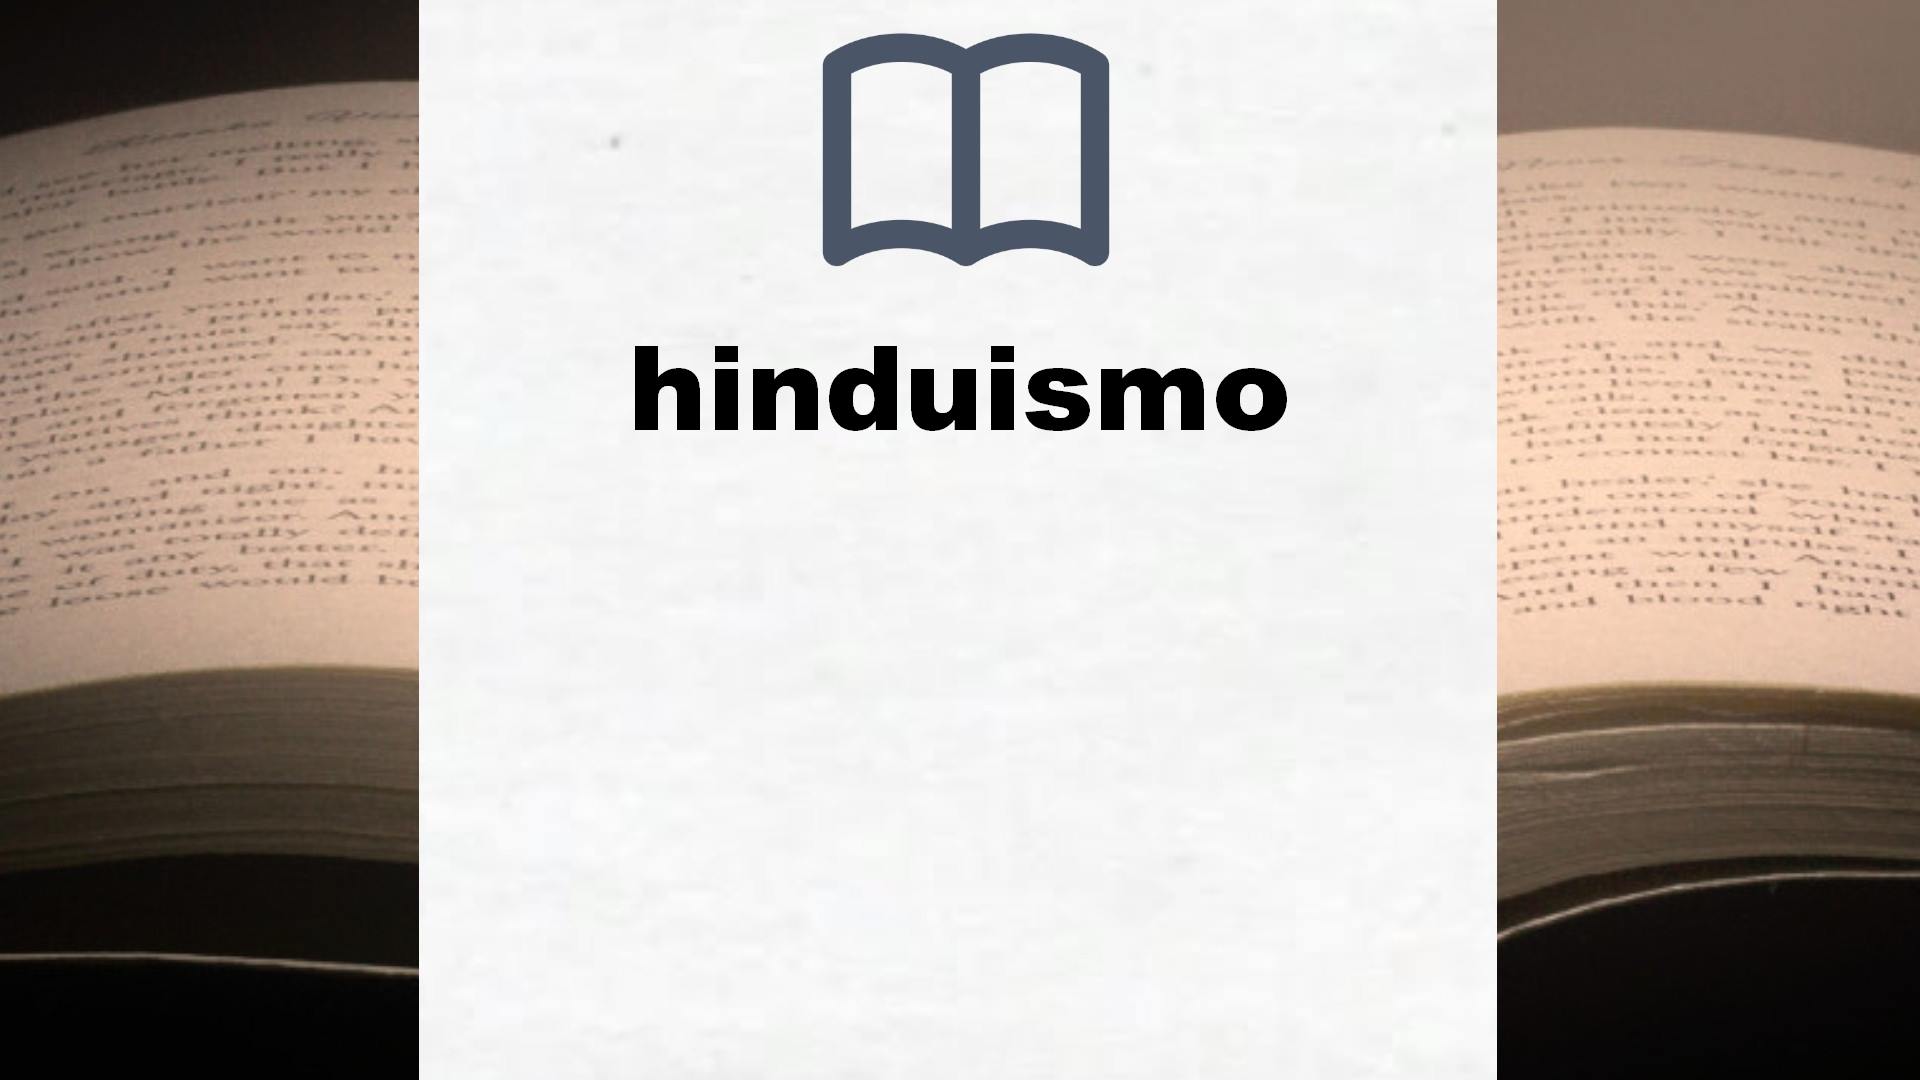 Libros sobre hinduismo